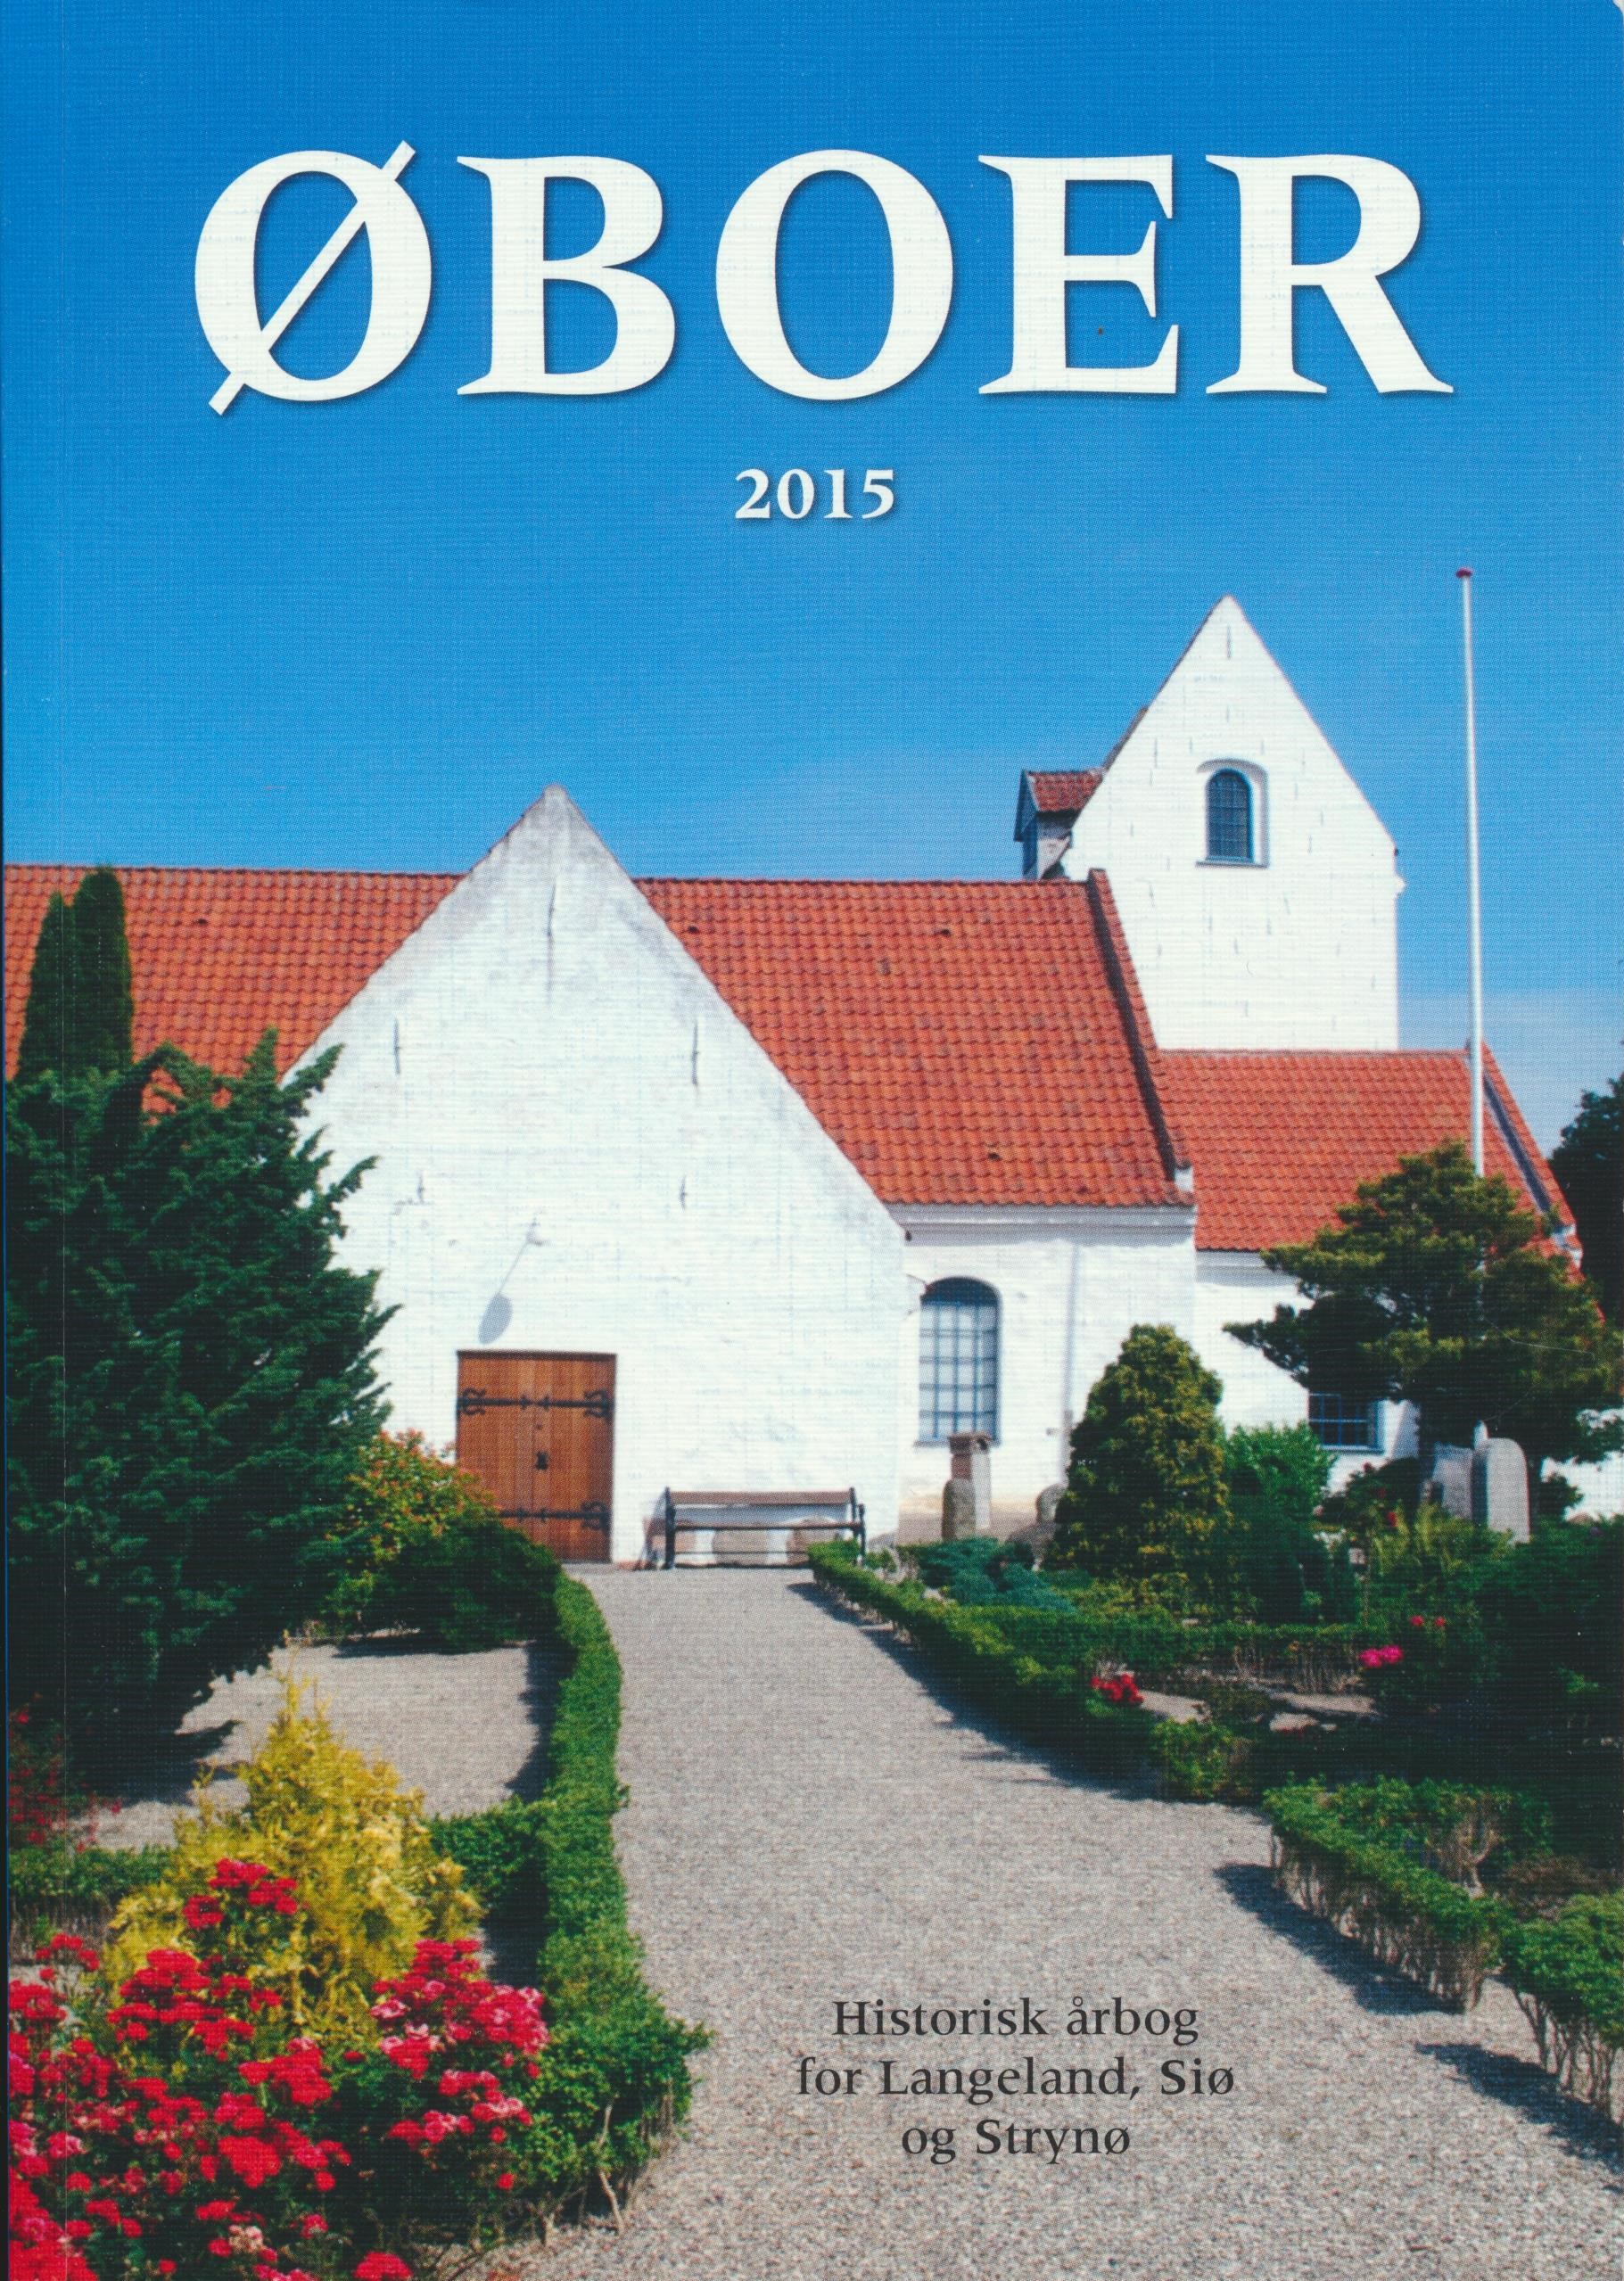 Oboer 2015